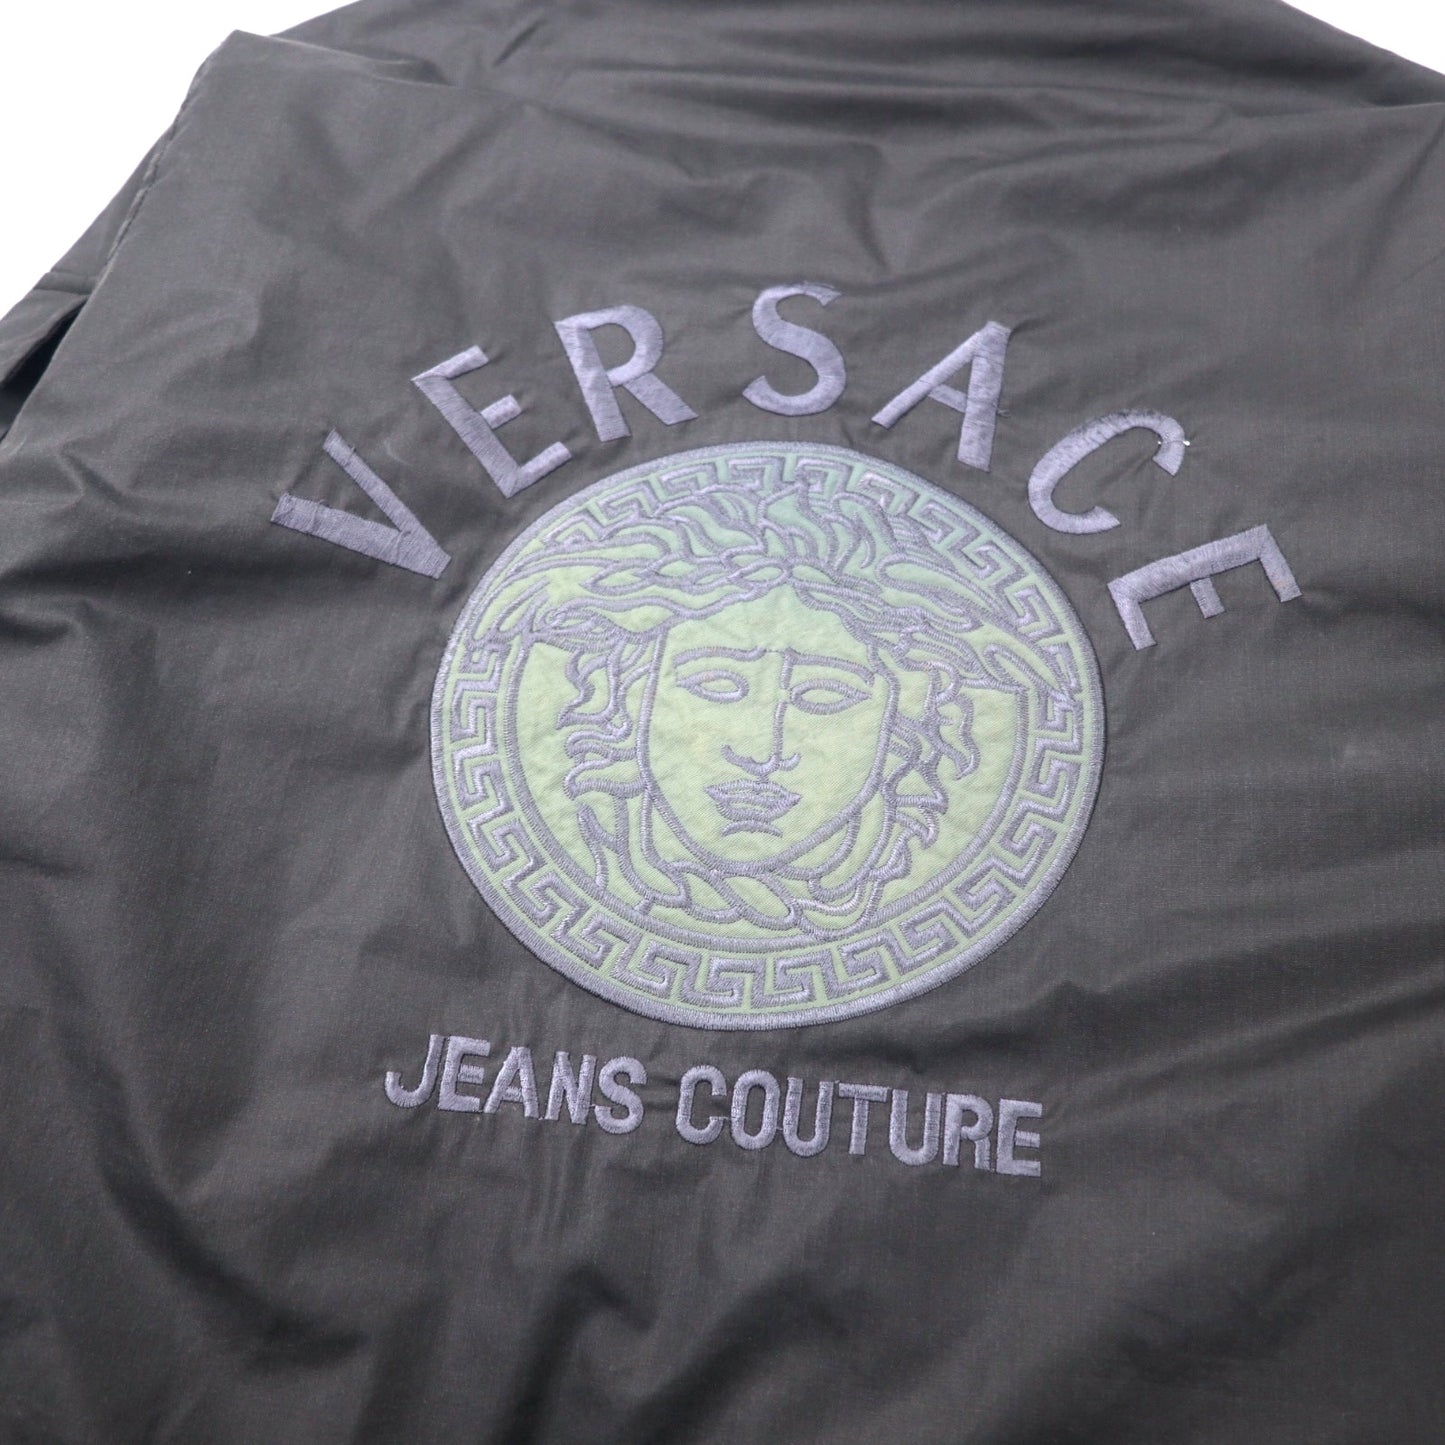 VERSACE JEANS COUTURE イタリア製 フィールドパーカー ナイロンジャケット L ブラック メデューサ ロゴ刺繍